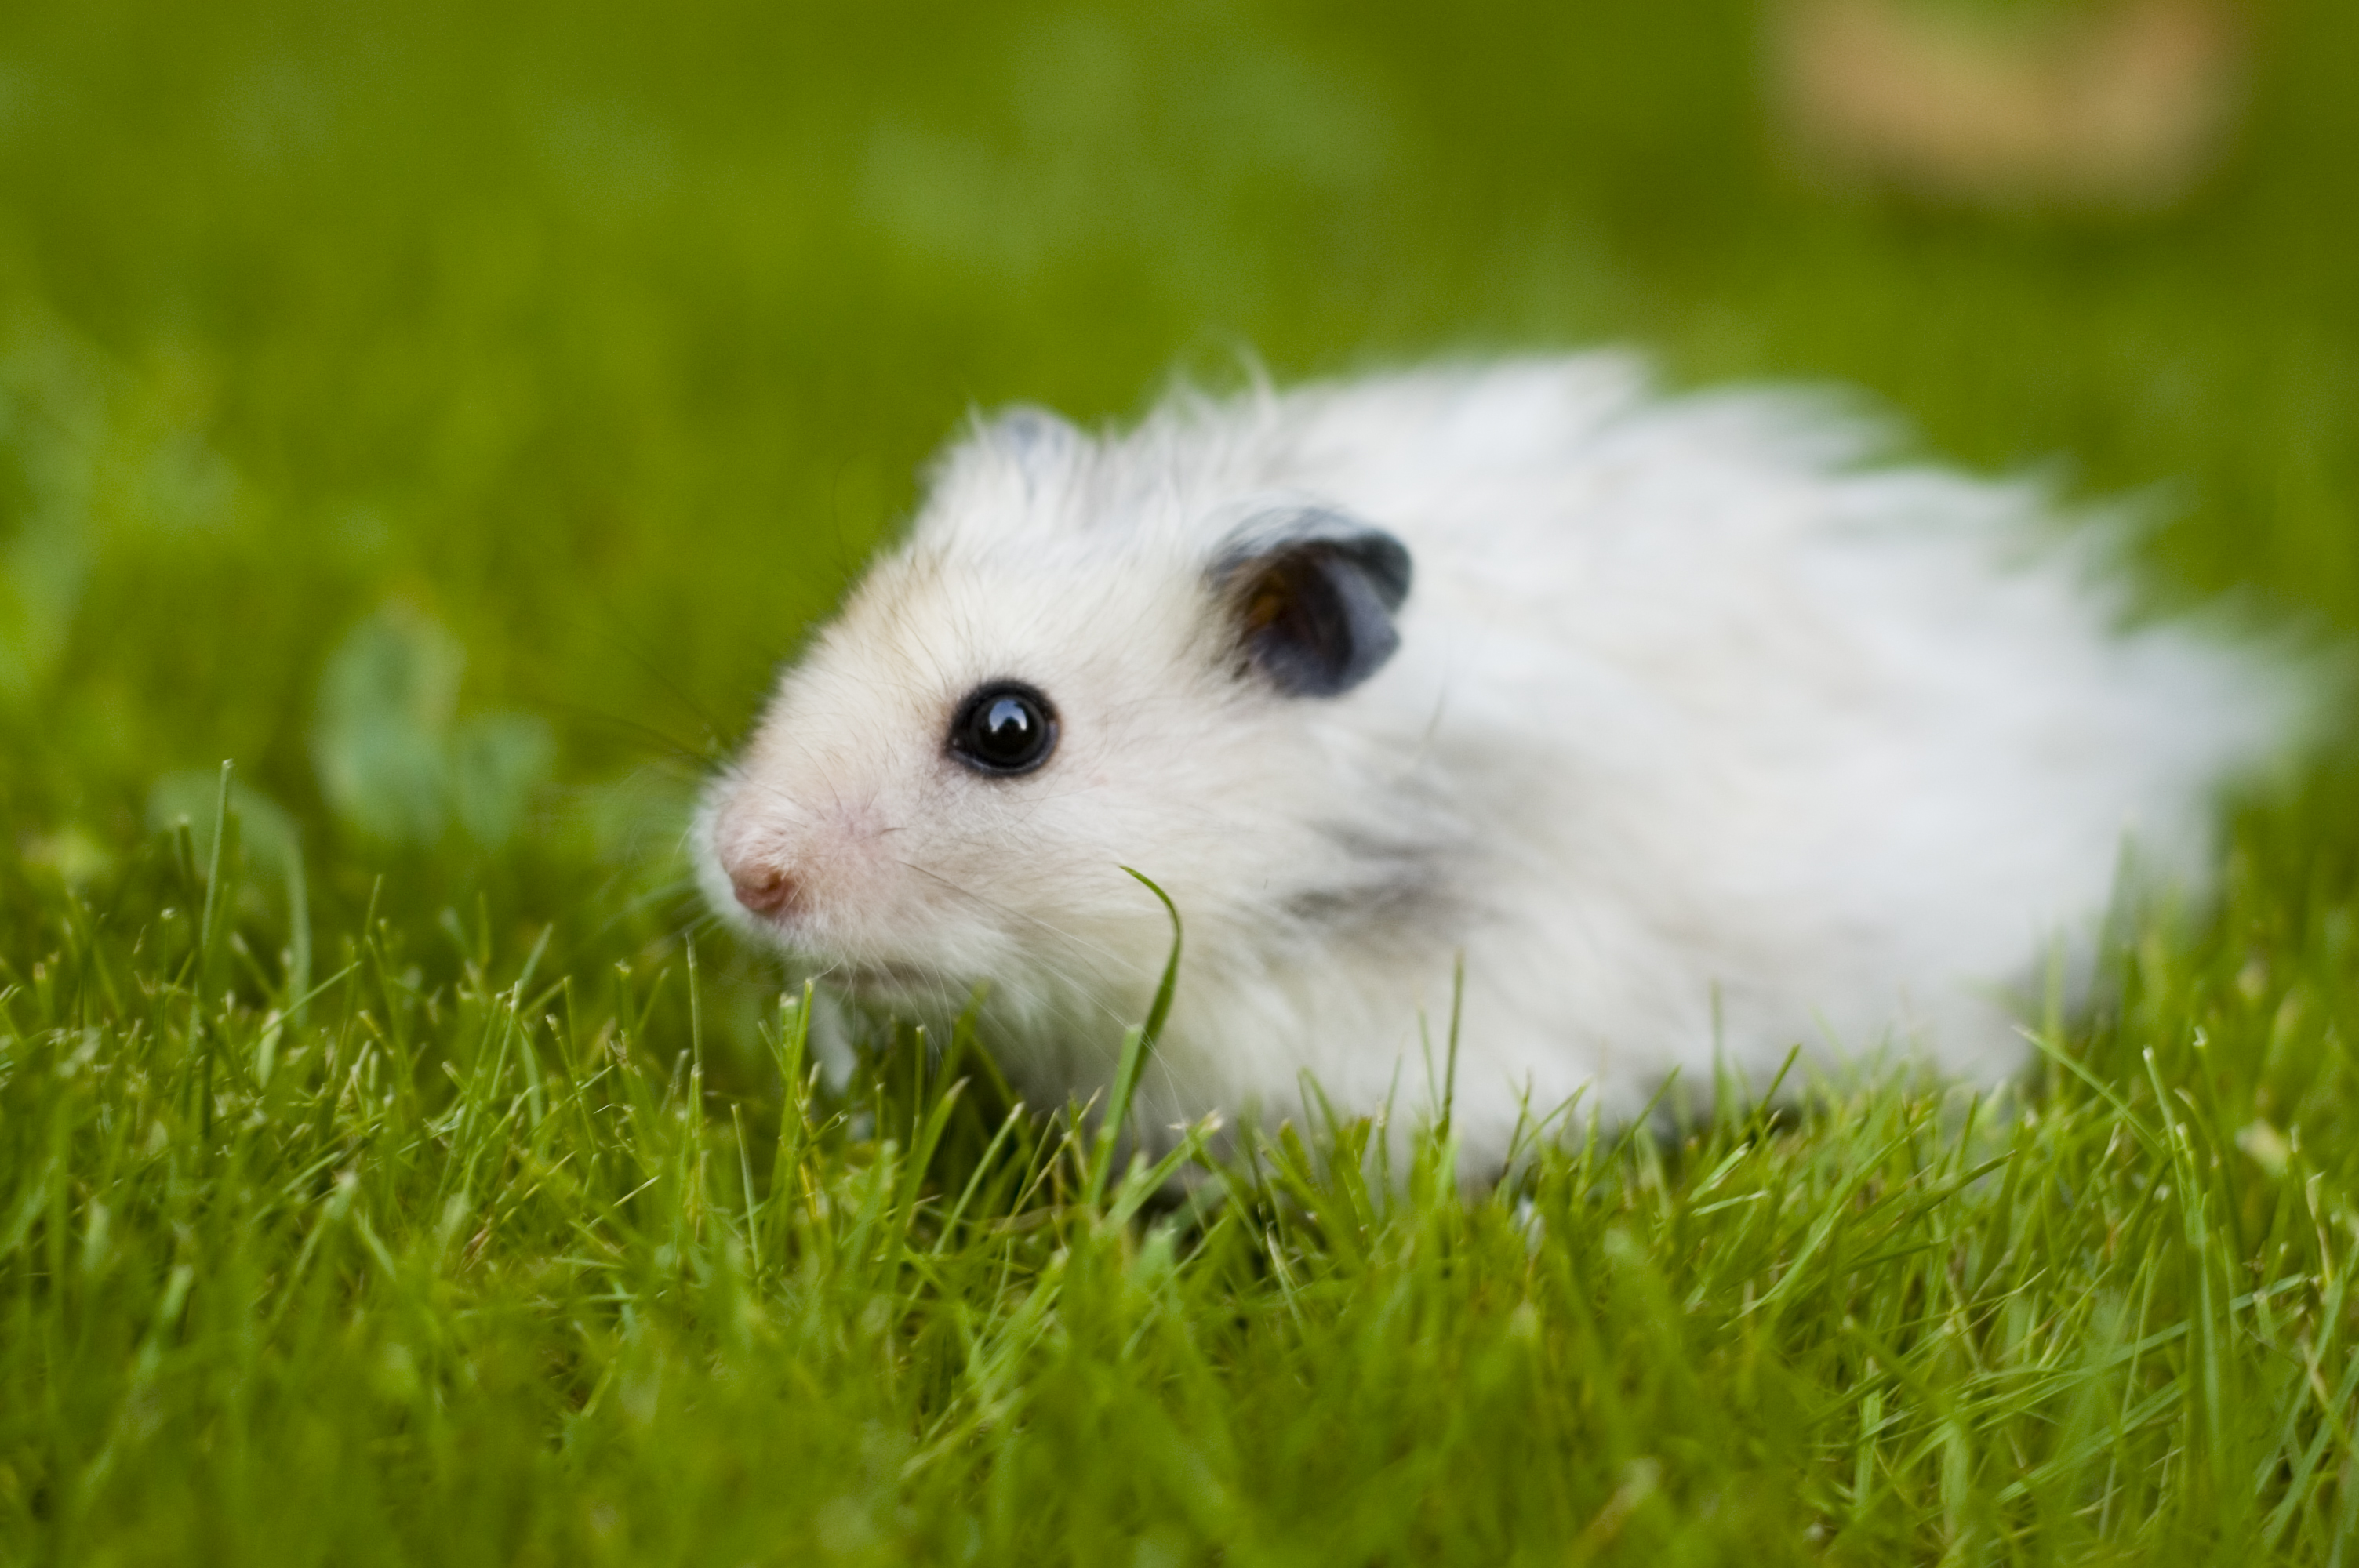 フリー画像 動物写真 哺乳類 小動物 ネズミ上科 ハムスター フリー素材 画像素材なら 無料 フリー写真素材のフリーフォト